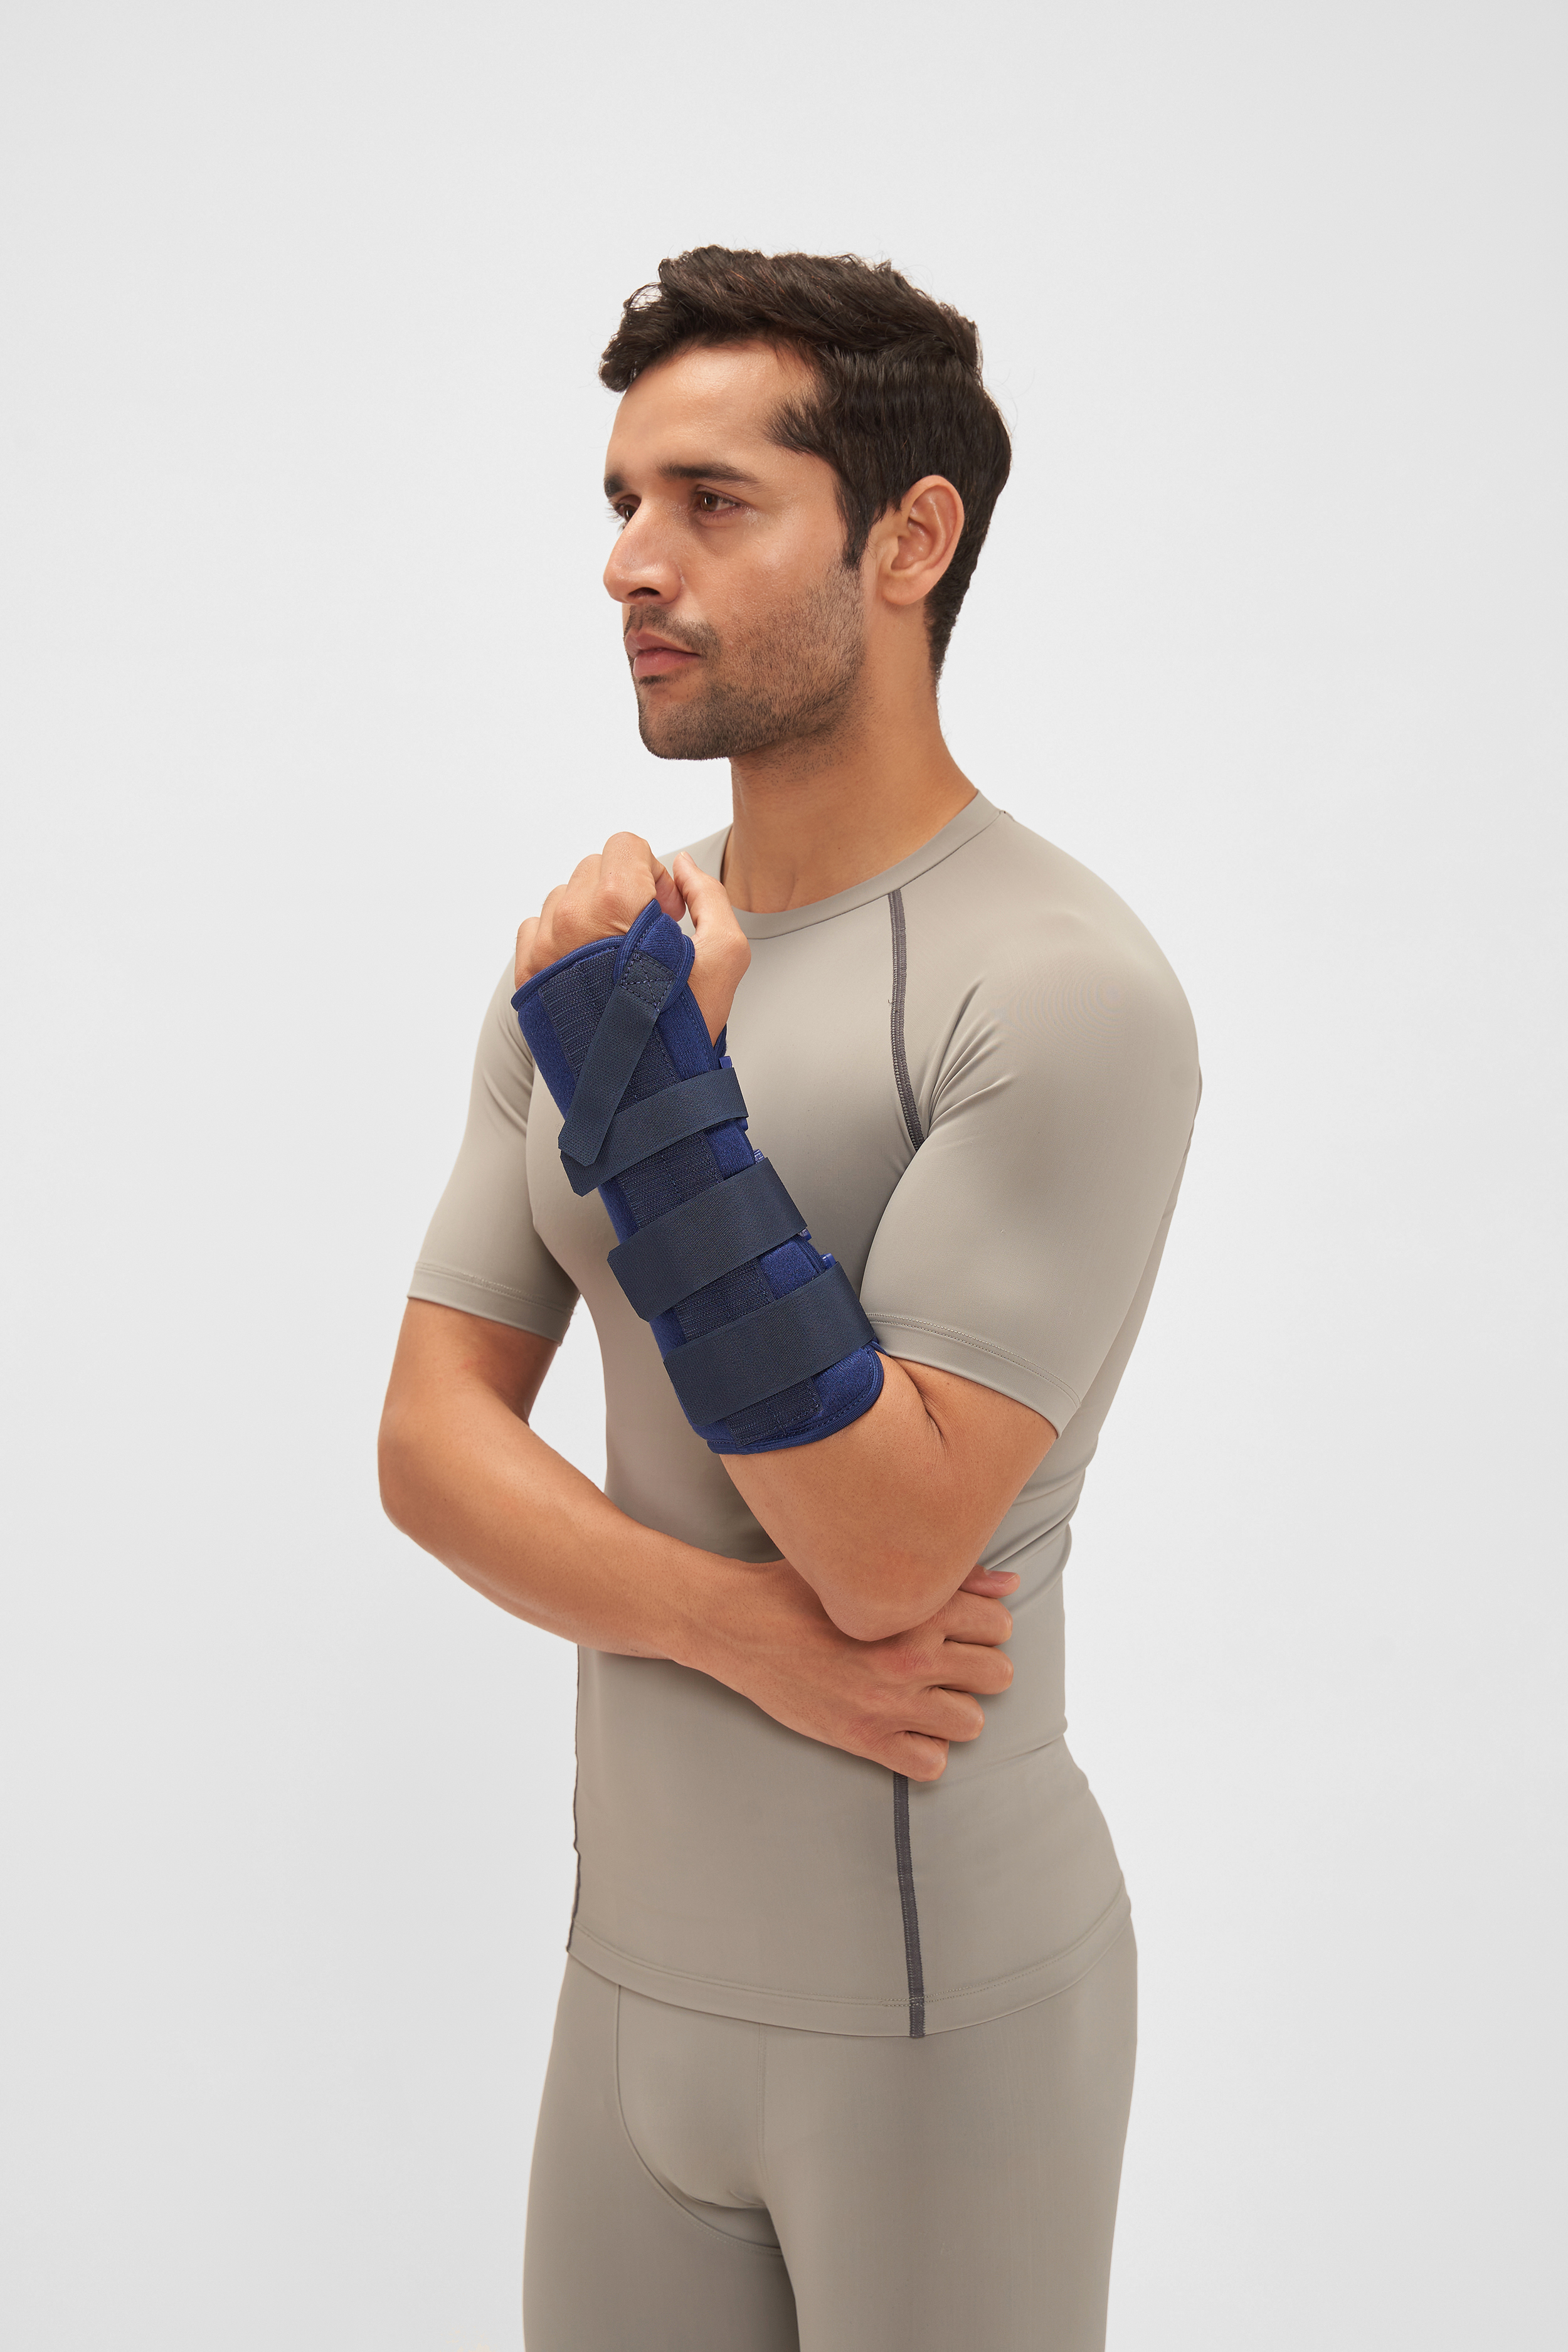 MGRM Wrist And Forearm Splint